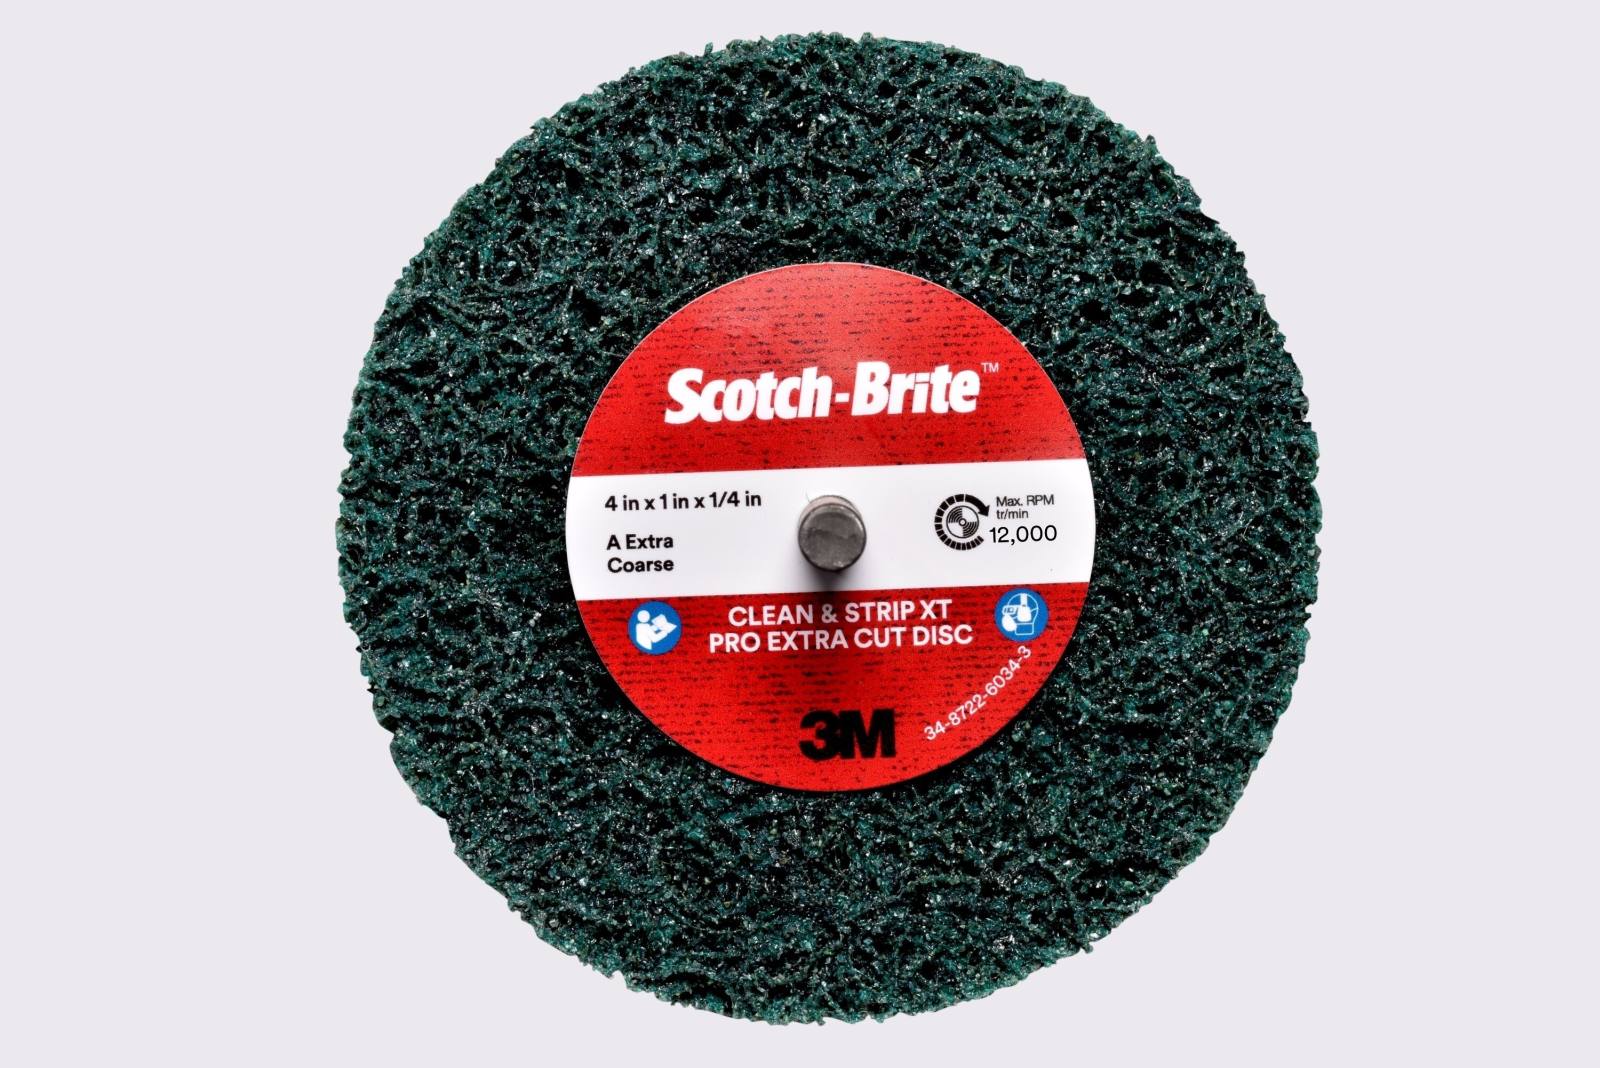 3M Scotch-Brite disco per pulizia grossolana XT-ZS Pro Extra Cut, 100 mm, 13 mm, 6 mm, A, extra grossolano